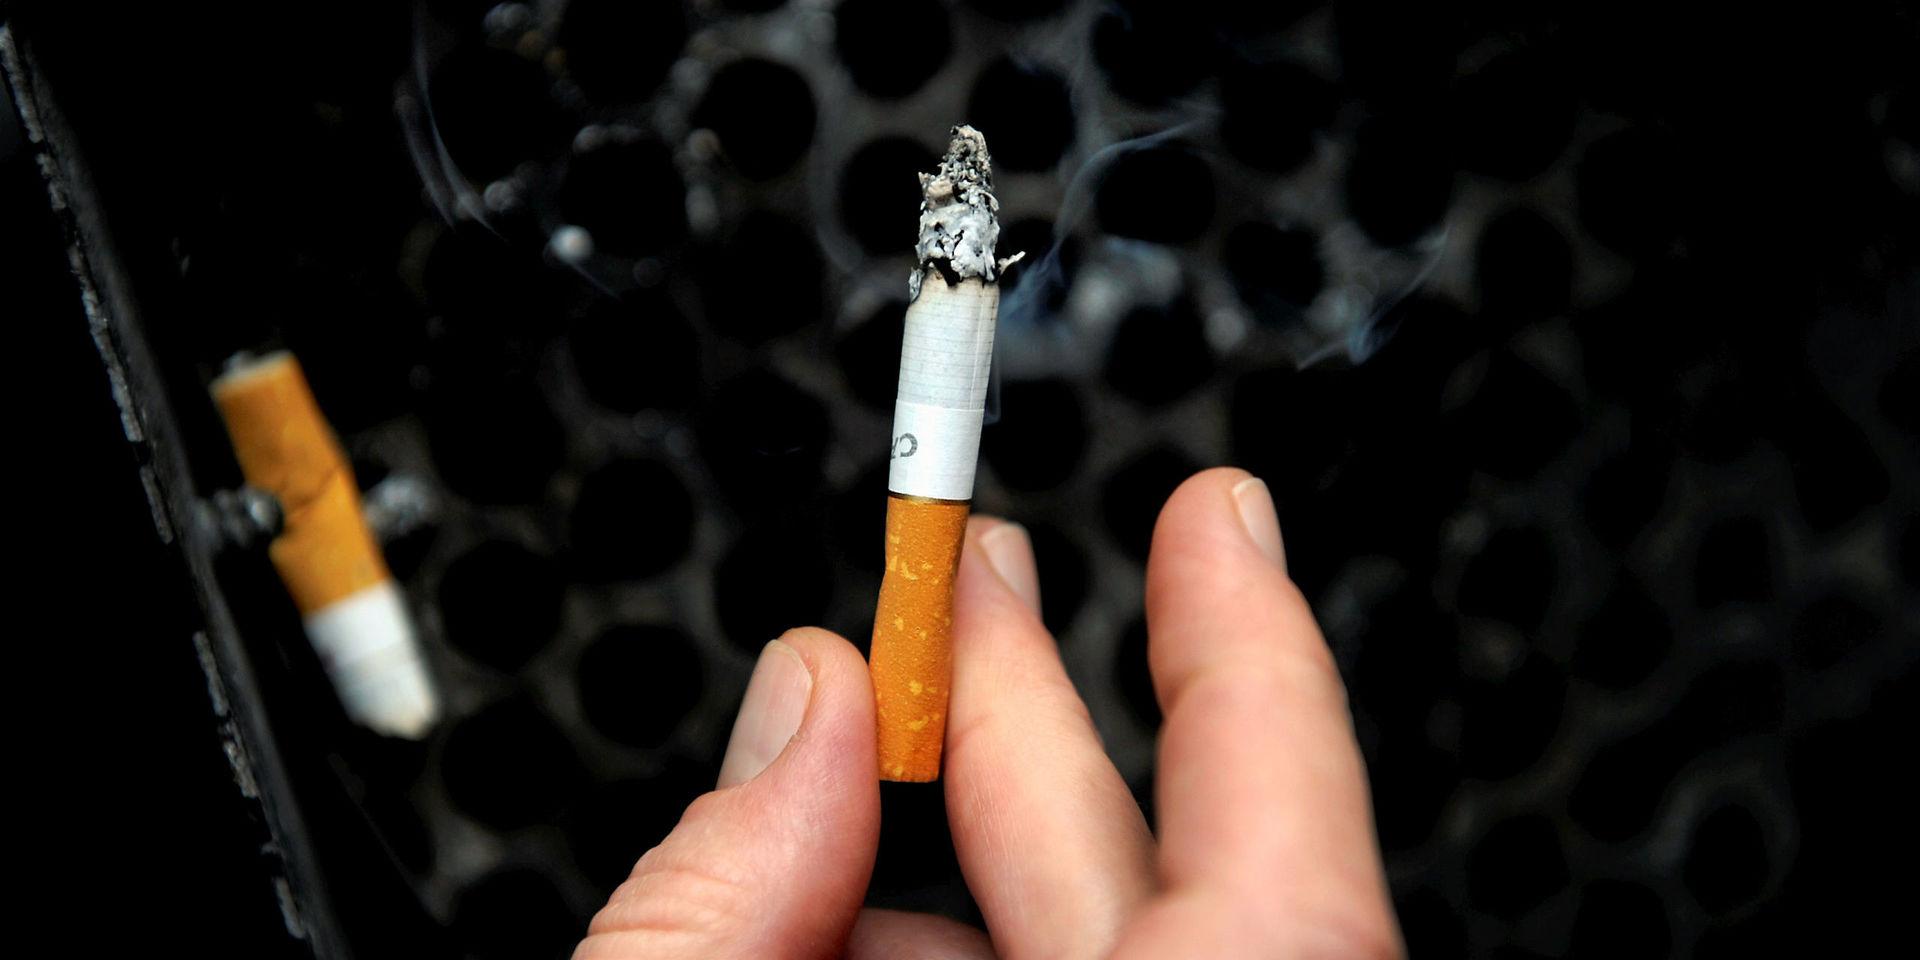 Rökning är inte tillåtet för medarbetare i Trollhättans Stad under arbetstid, uttrycker skribenten.